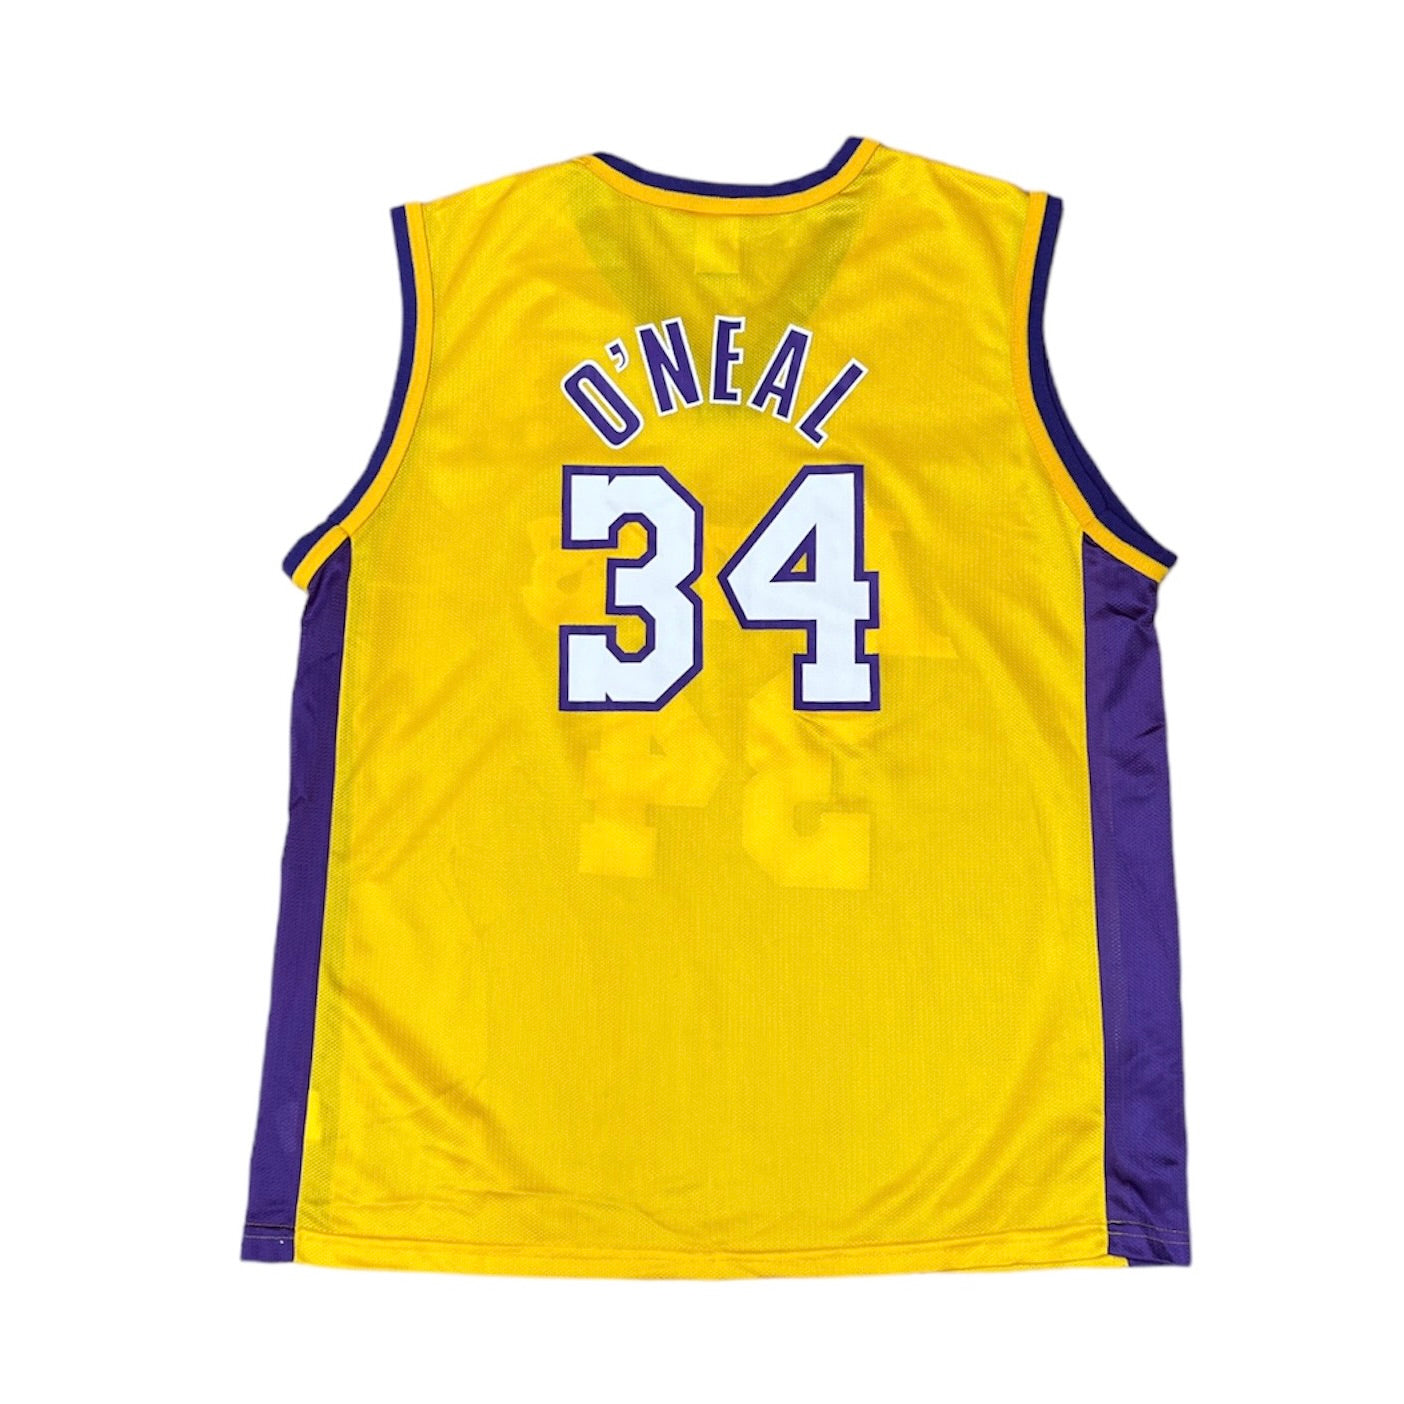 Champion Shaq O'Neal Lakers Basketball Jersey